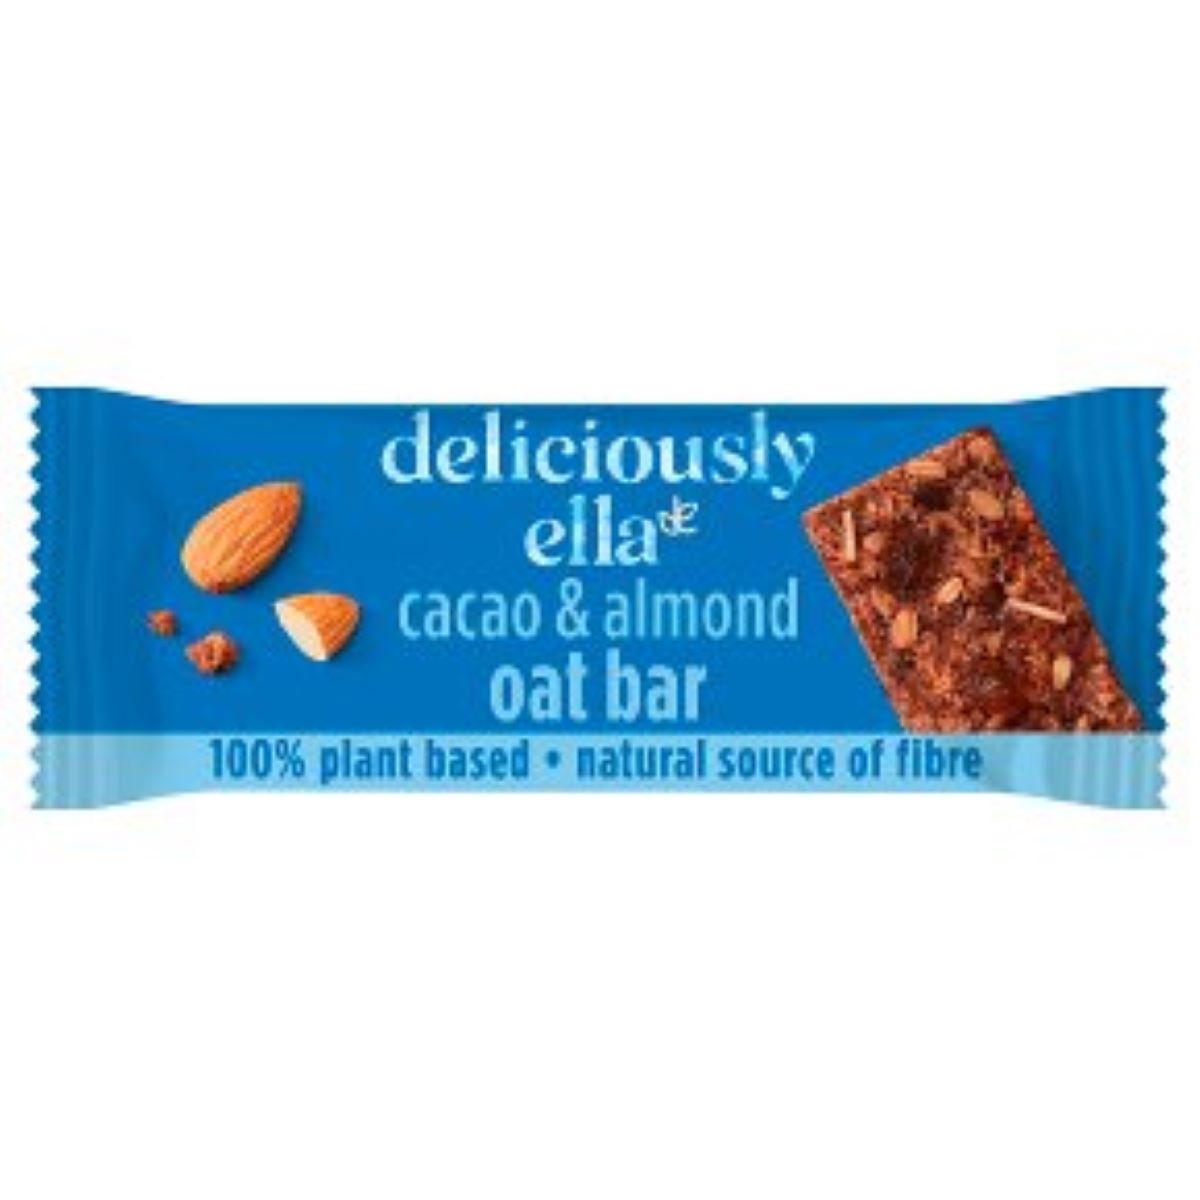 Deliciously Ella Cacao & Almond Oat Bar